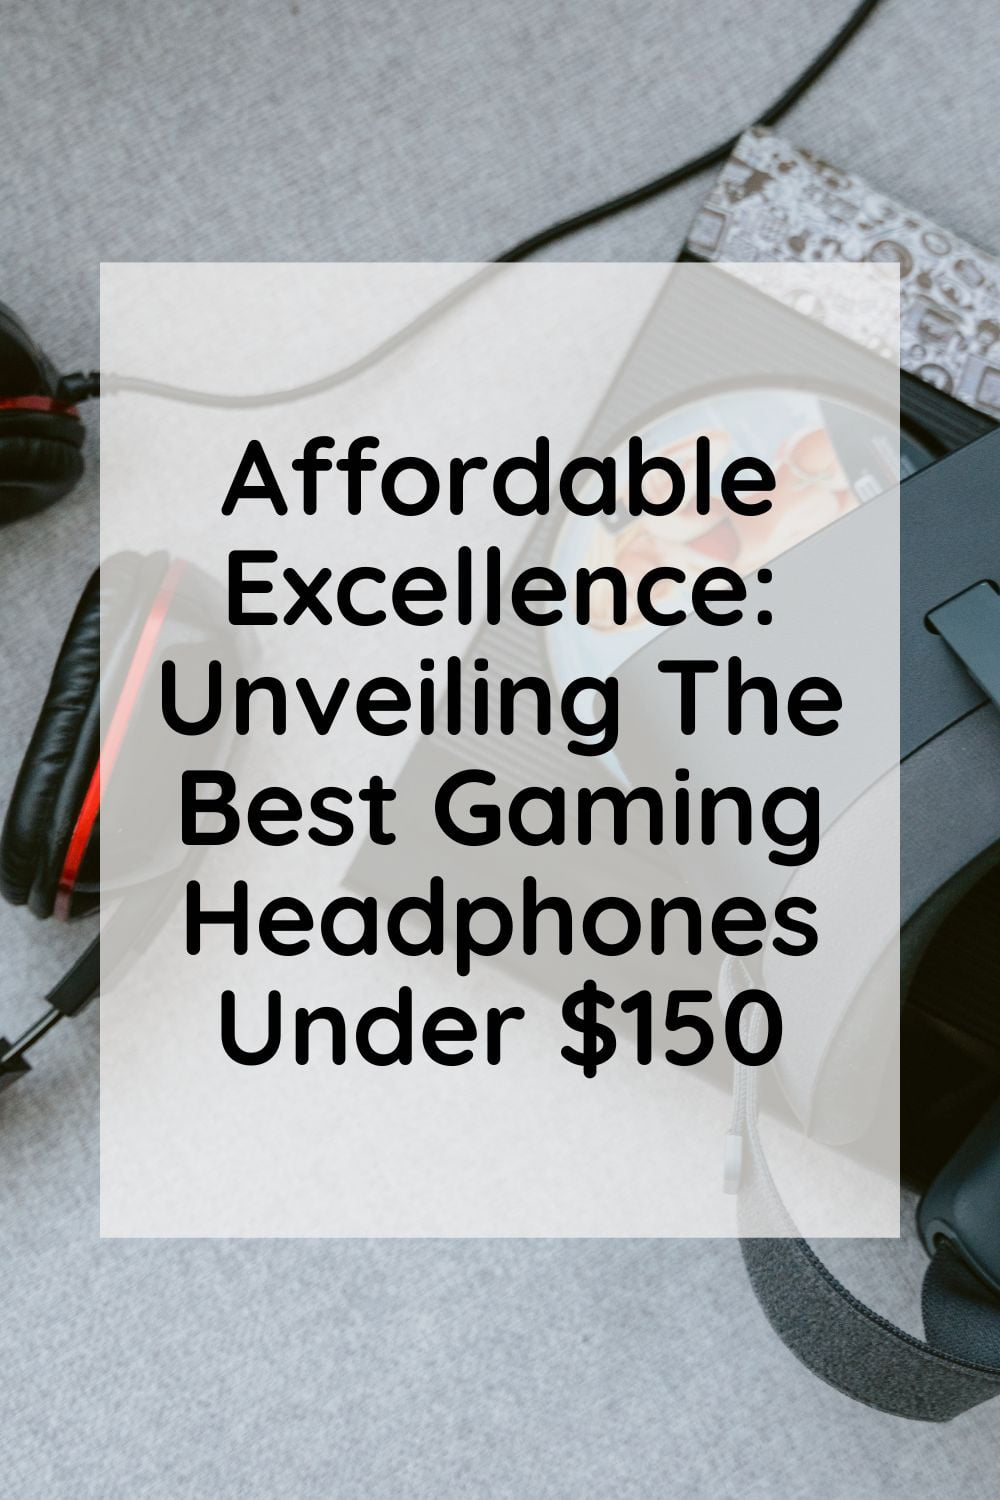 Best gaming headphones under $150